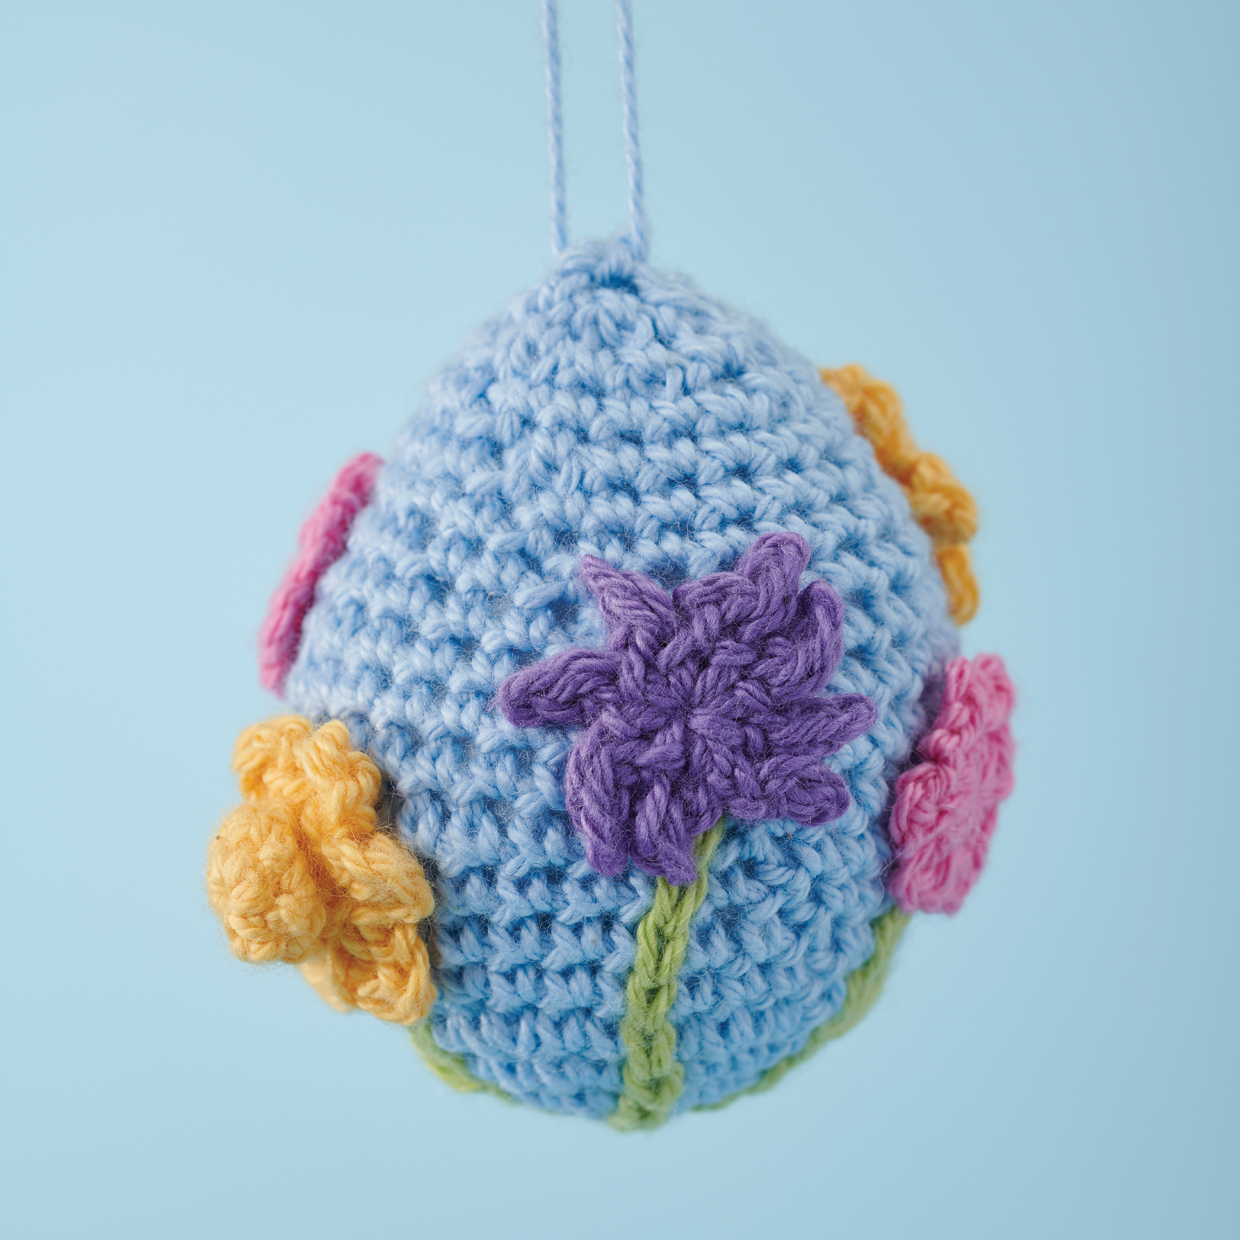 Free easter egg crochet pattern – Flowers